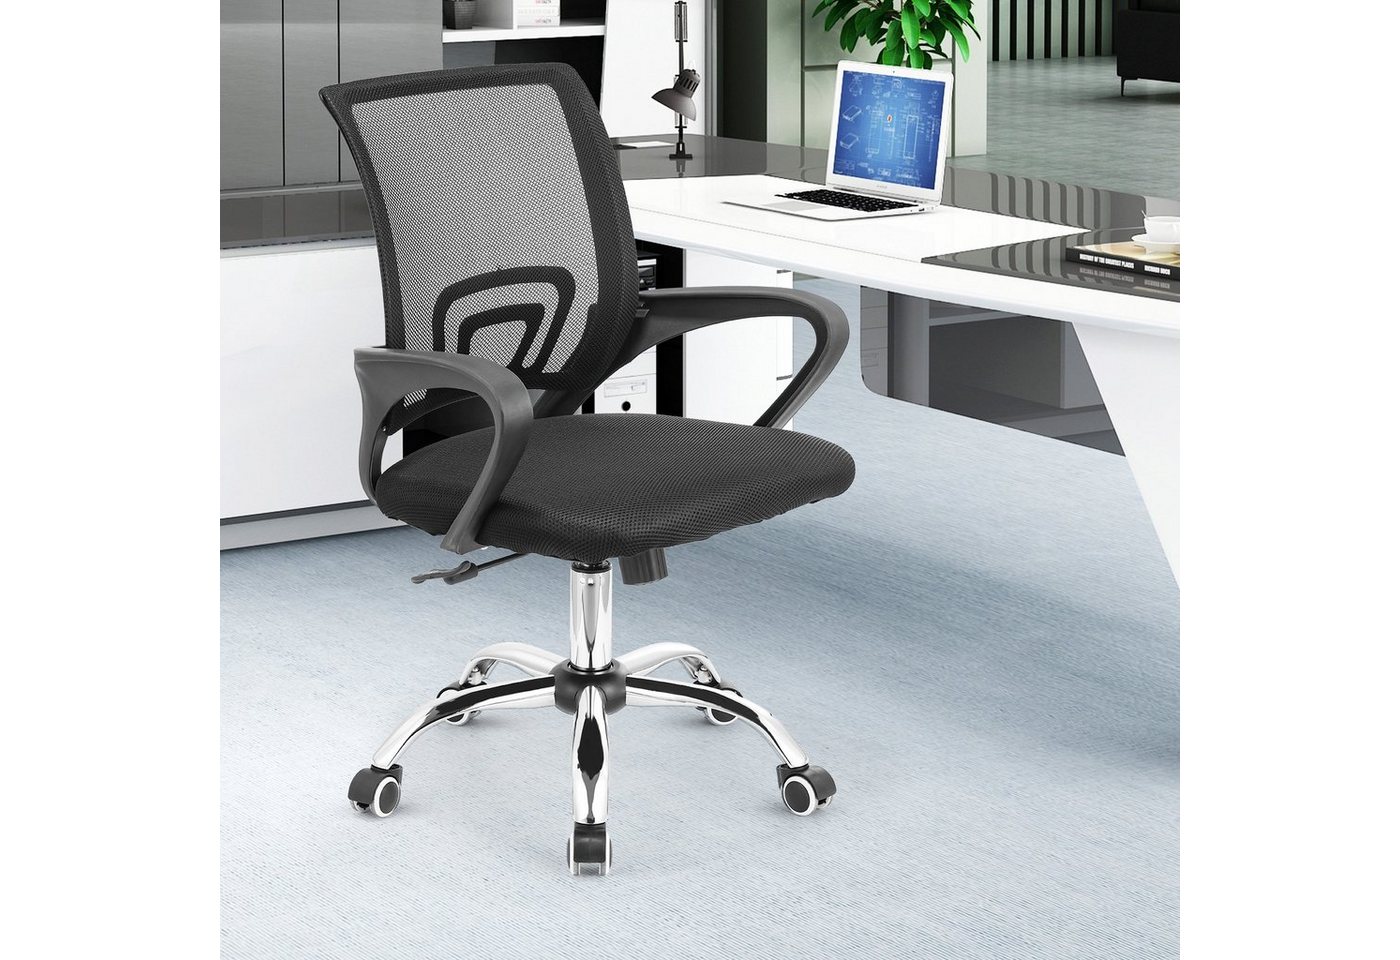 LETGOSPT Schreibtischstuhl Schreibtischstuhl Sitzfläche, Verchromten Fußkreuz, 5 Kunststoffrollen, Höhenverstellbar Ergonomischer Gepolsterte Chair, Wippfunktion 90°-135° von LETGOSPT